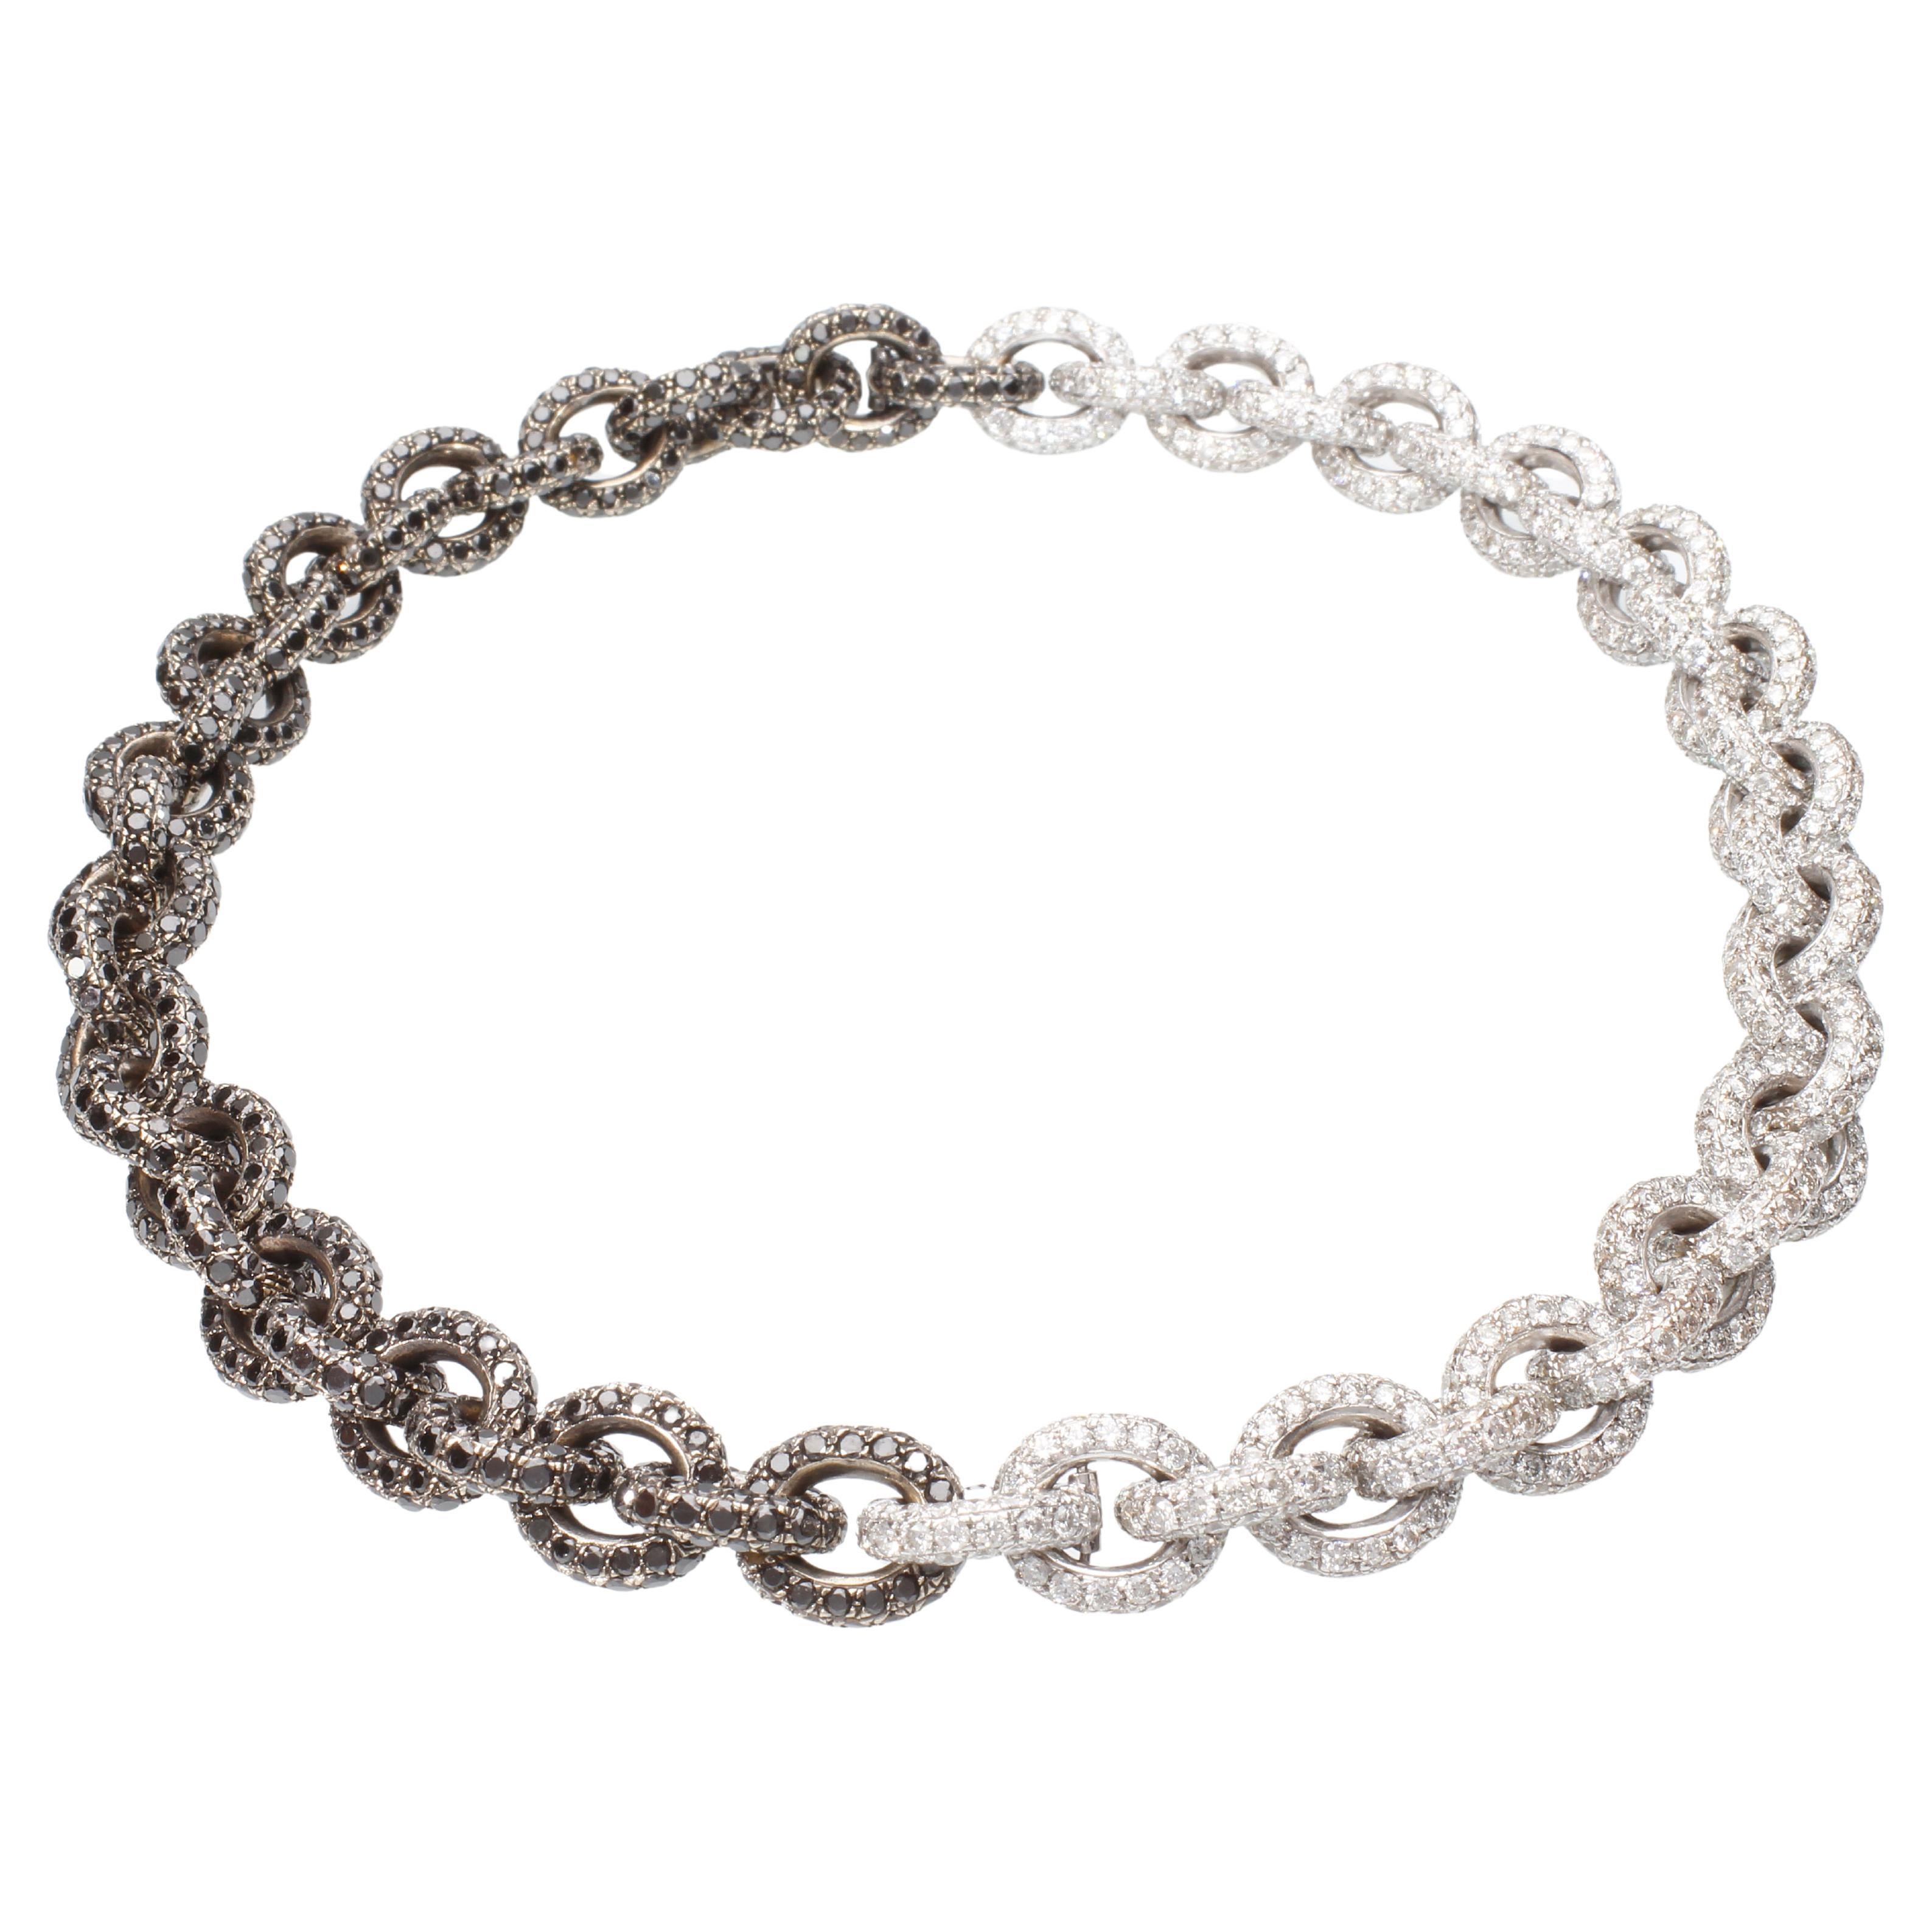 Halskette/Armband mit 64,26 Karat weißen und schwarzen Diamanten. Handgefertigt.